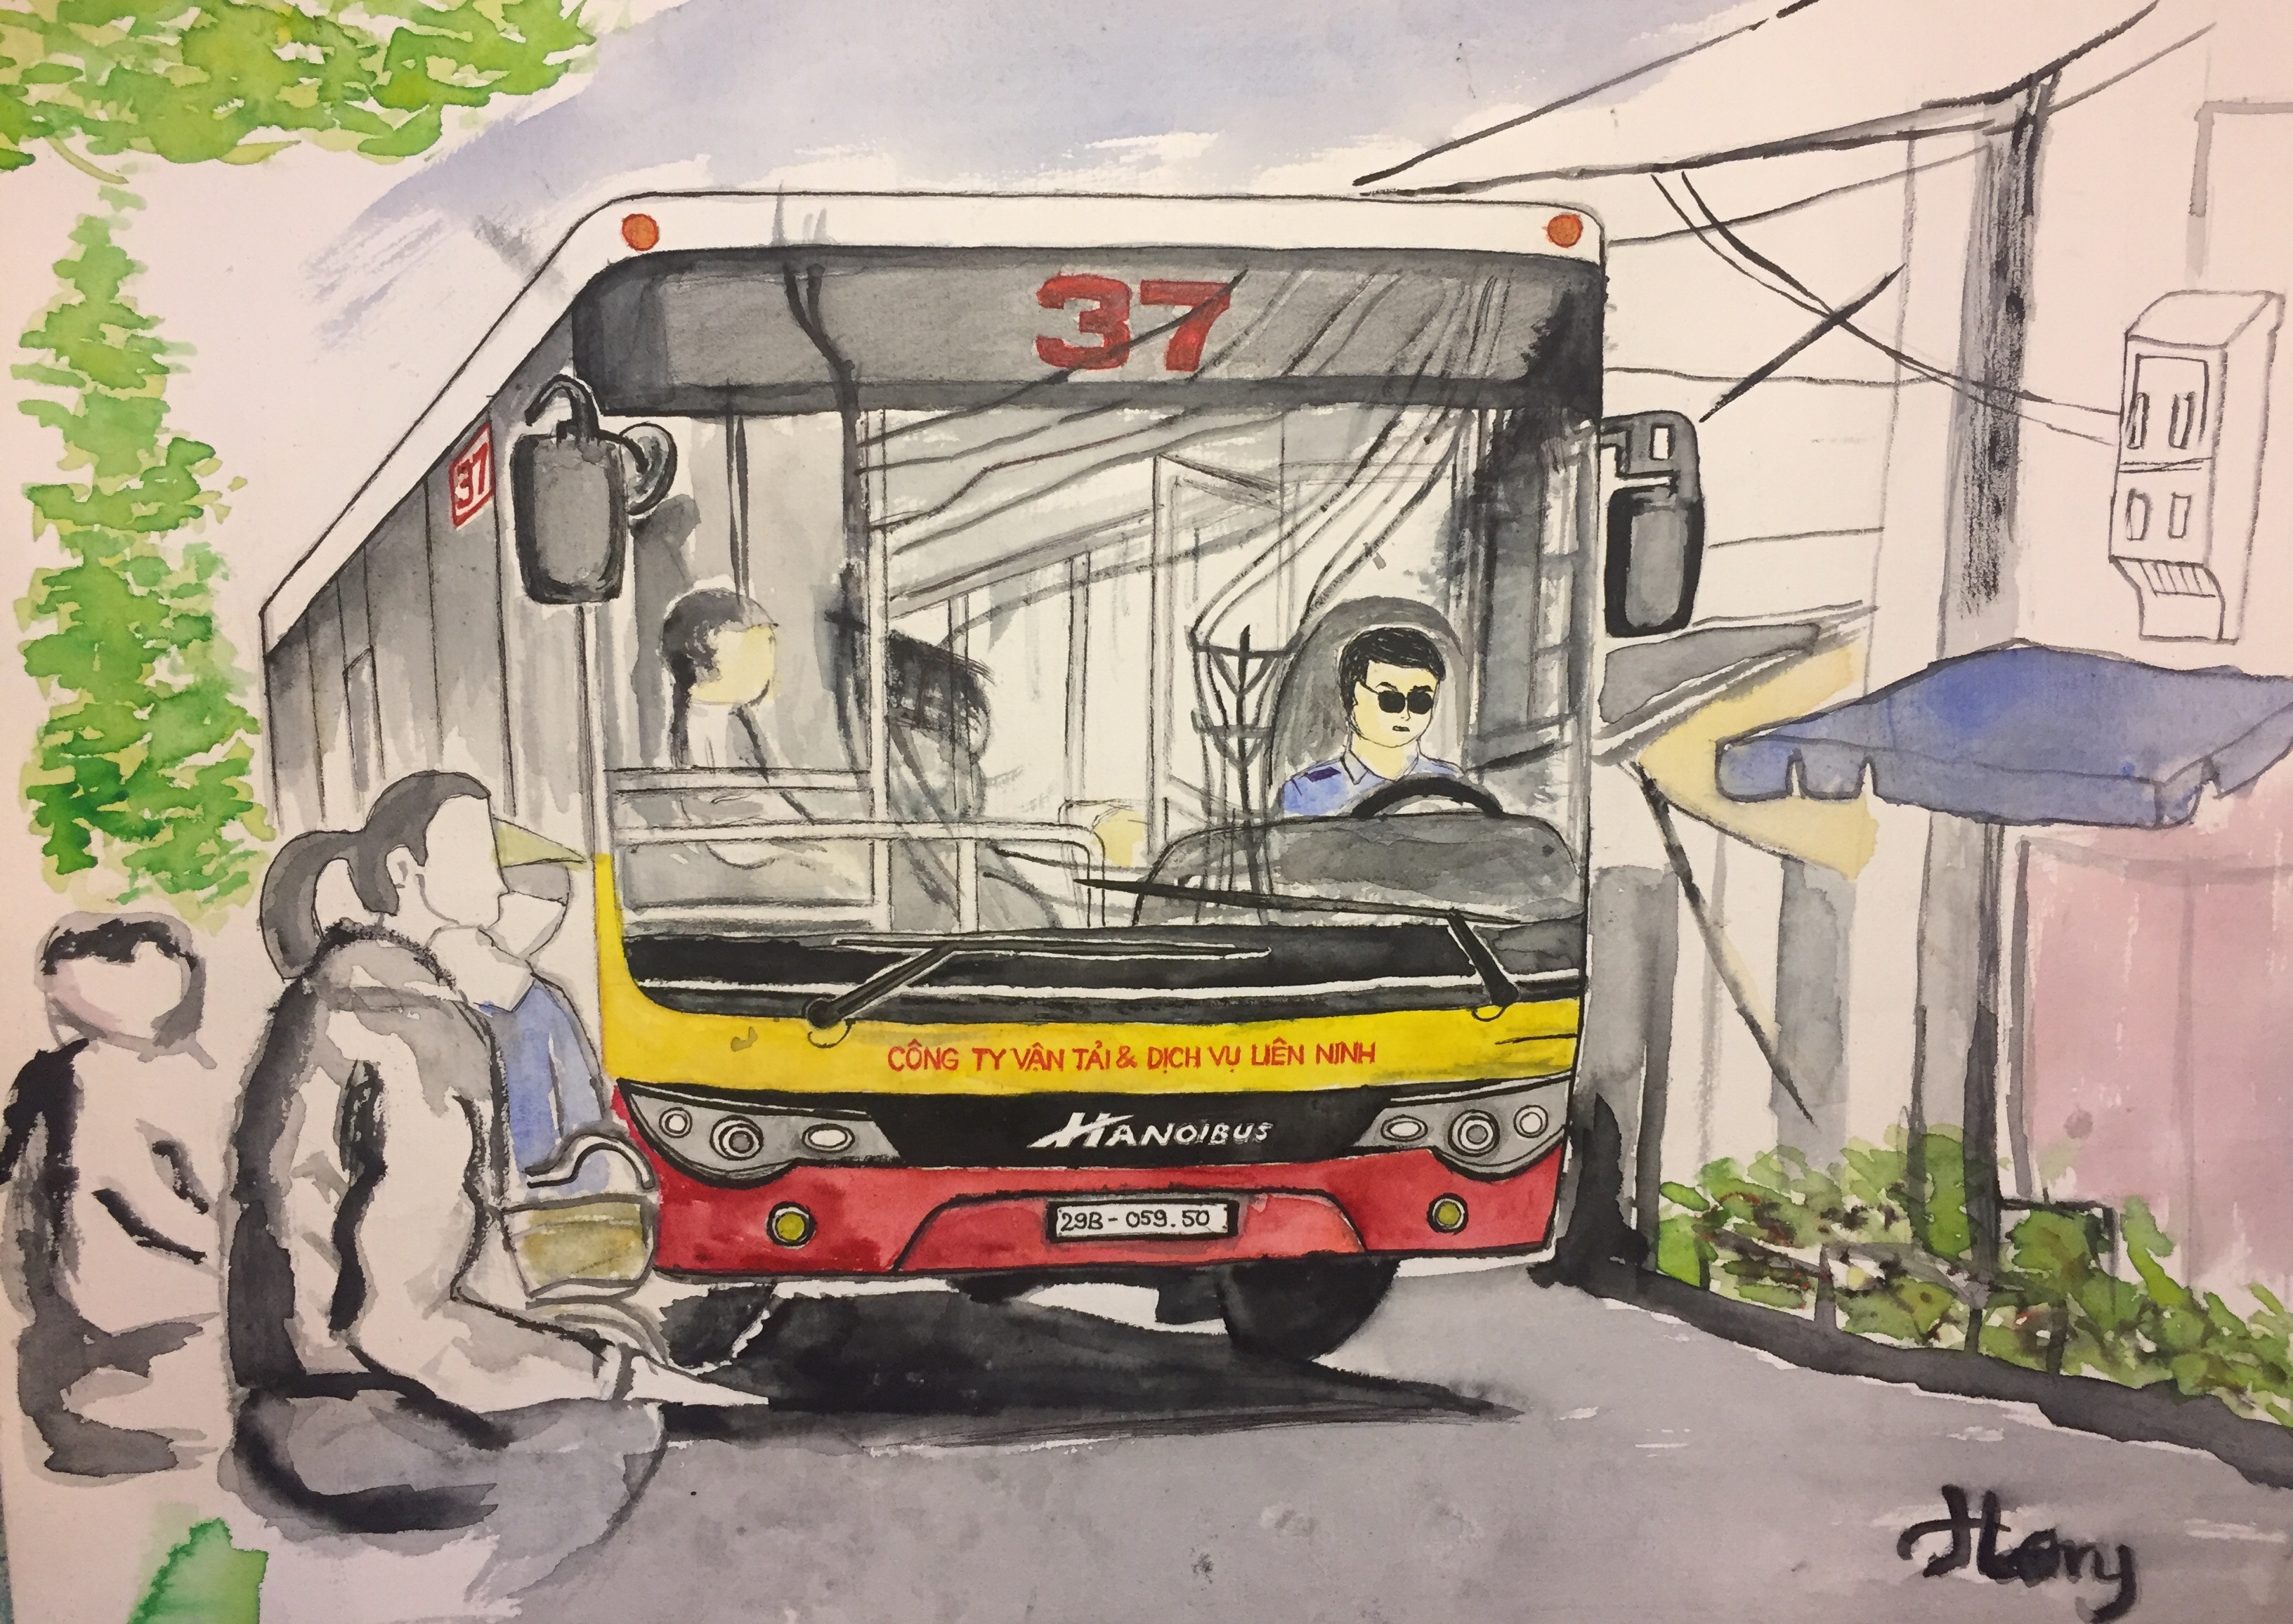 Tranh vẽ xe buýt Hà Nội sẽ mang đến cho bạn một cảm giác mới mẻ và thú vị về phong cách của các chiếc xe buýt cổ điển. Tham quan tranh vẽ, bạn sẽ được chiêm ngưỡng các chi tiết tuyệt đẹp về kiến trúc và lưu thông trên đường phố Hà Nội.